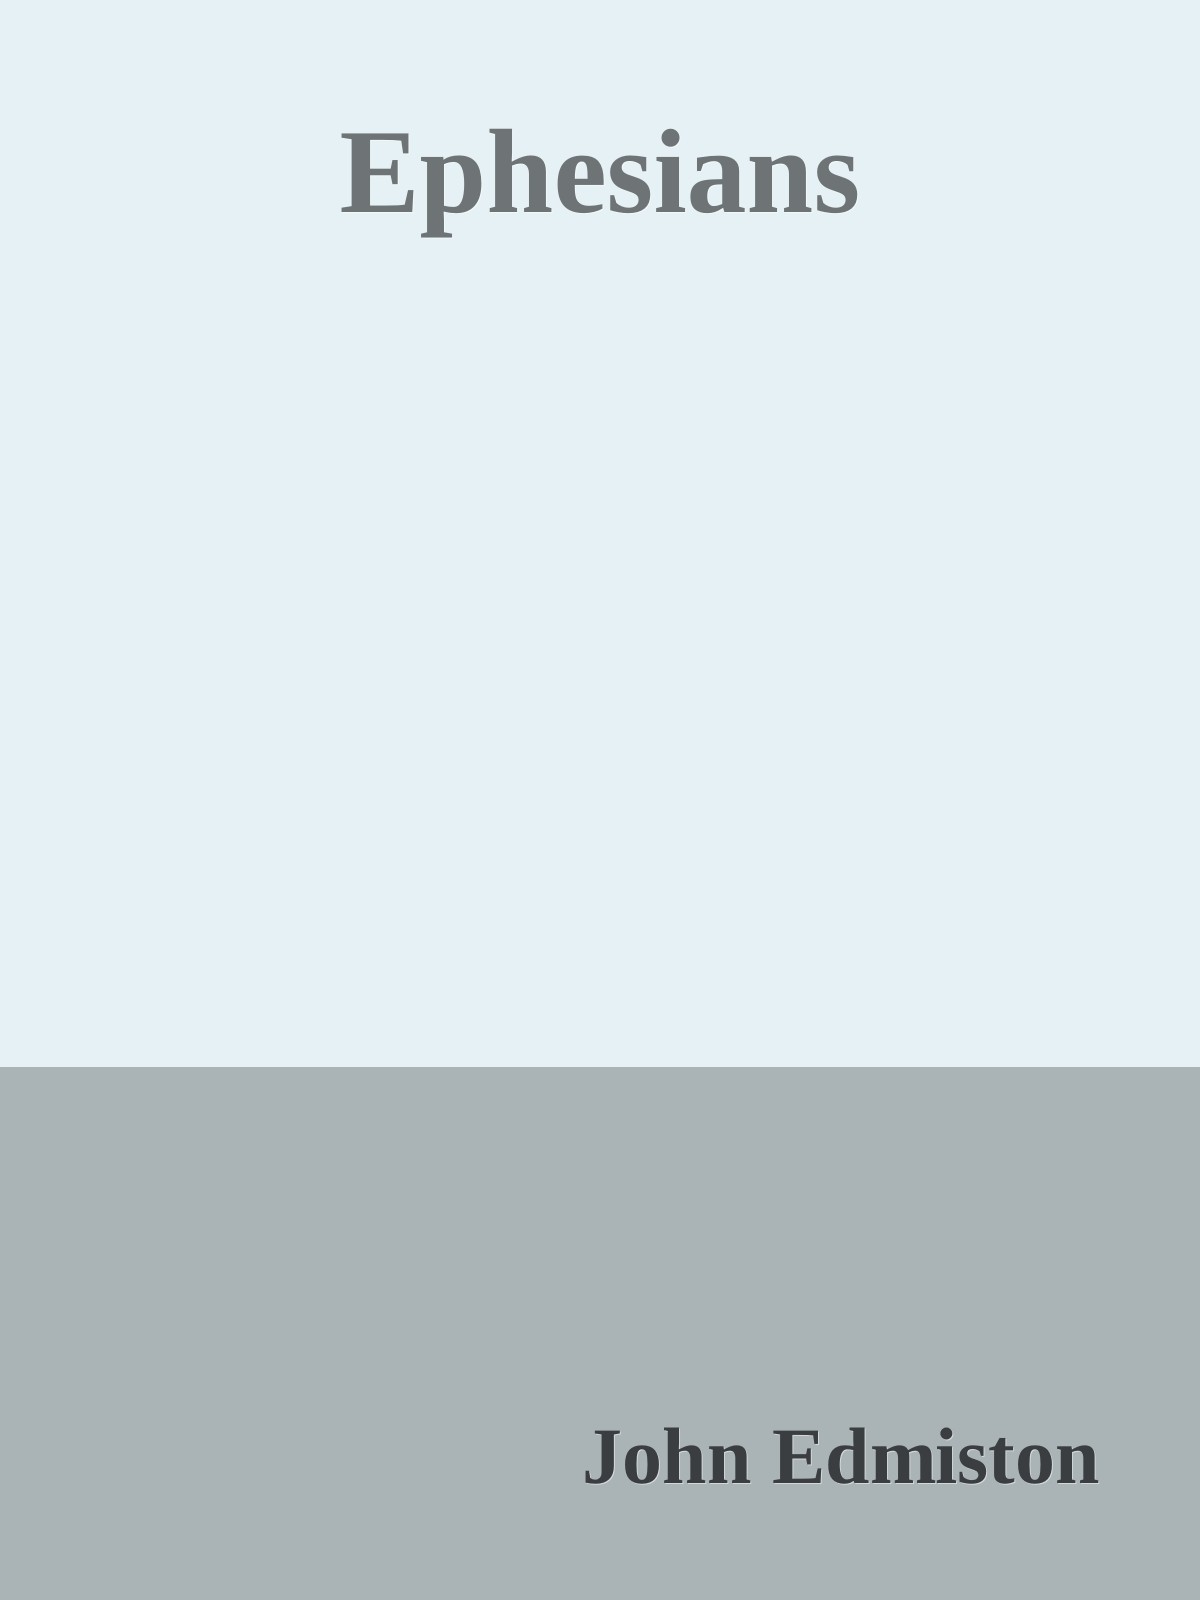 Download Ephesians PDF by John Edmiston [Edmiston, John]